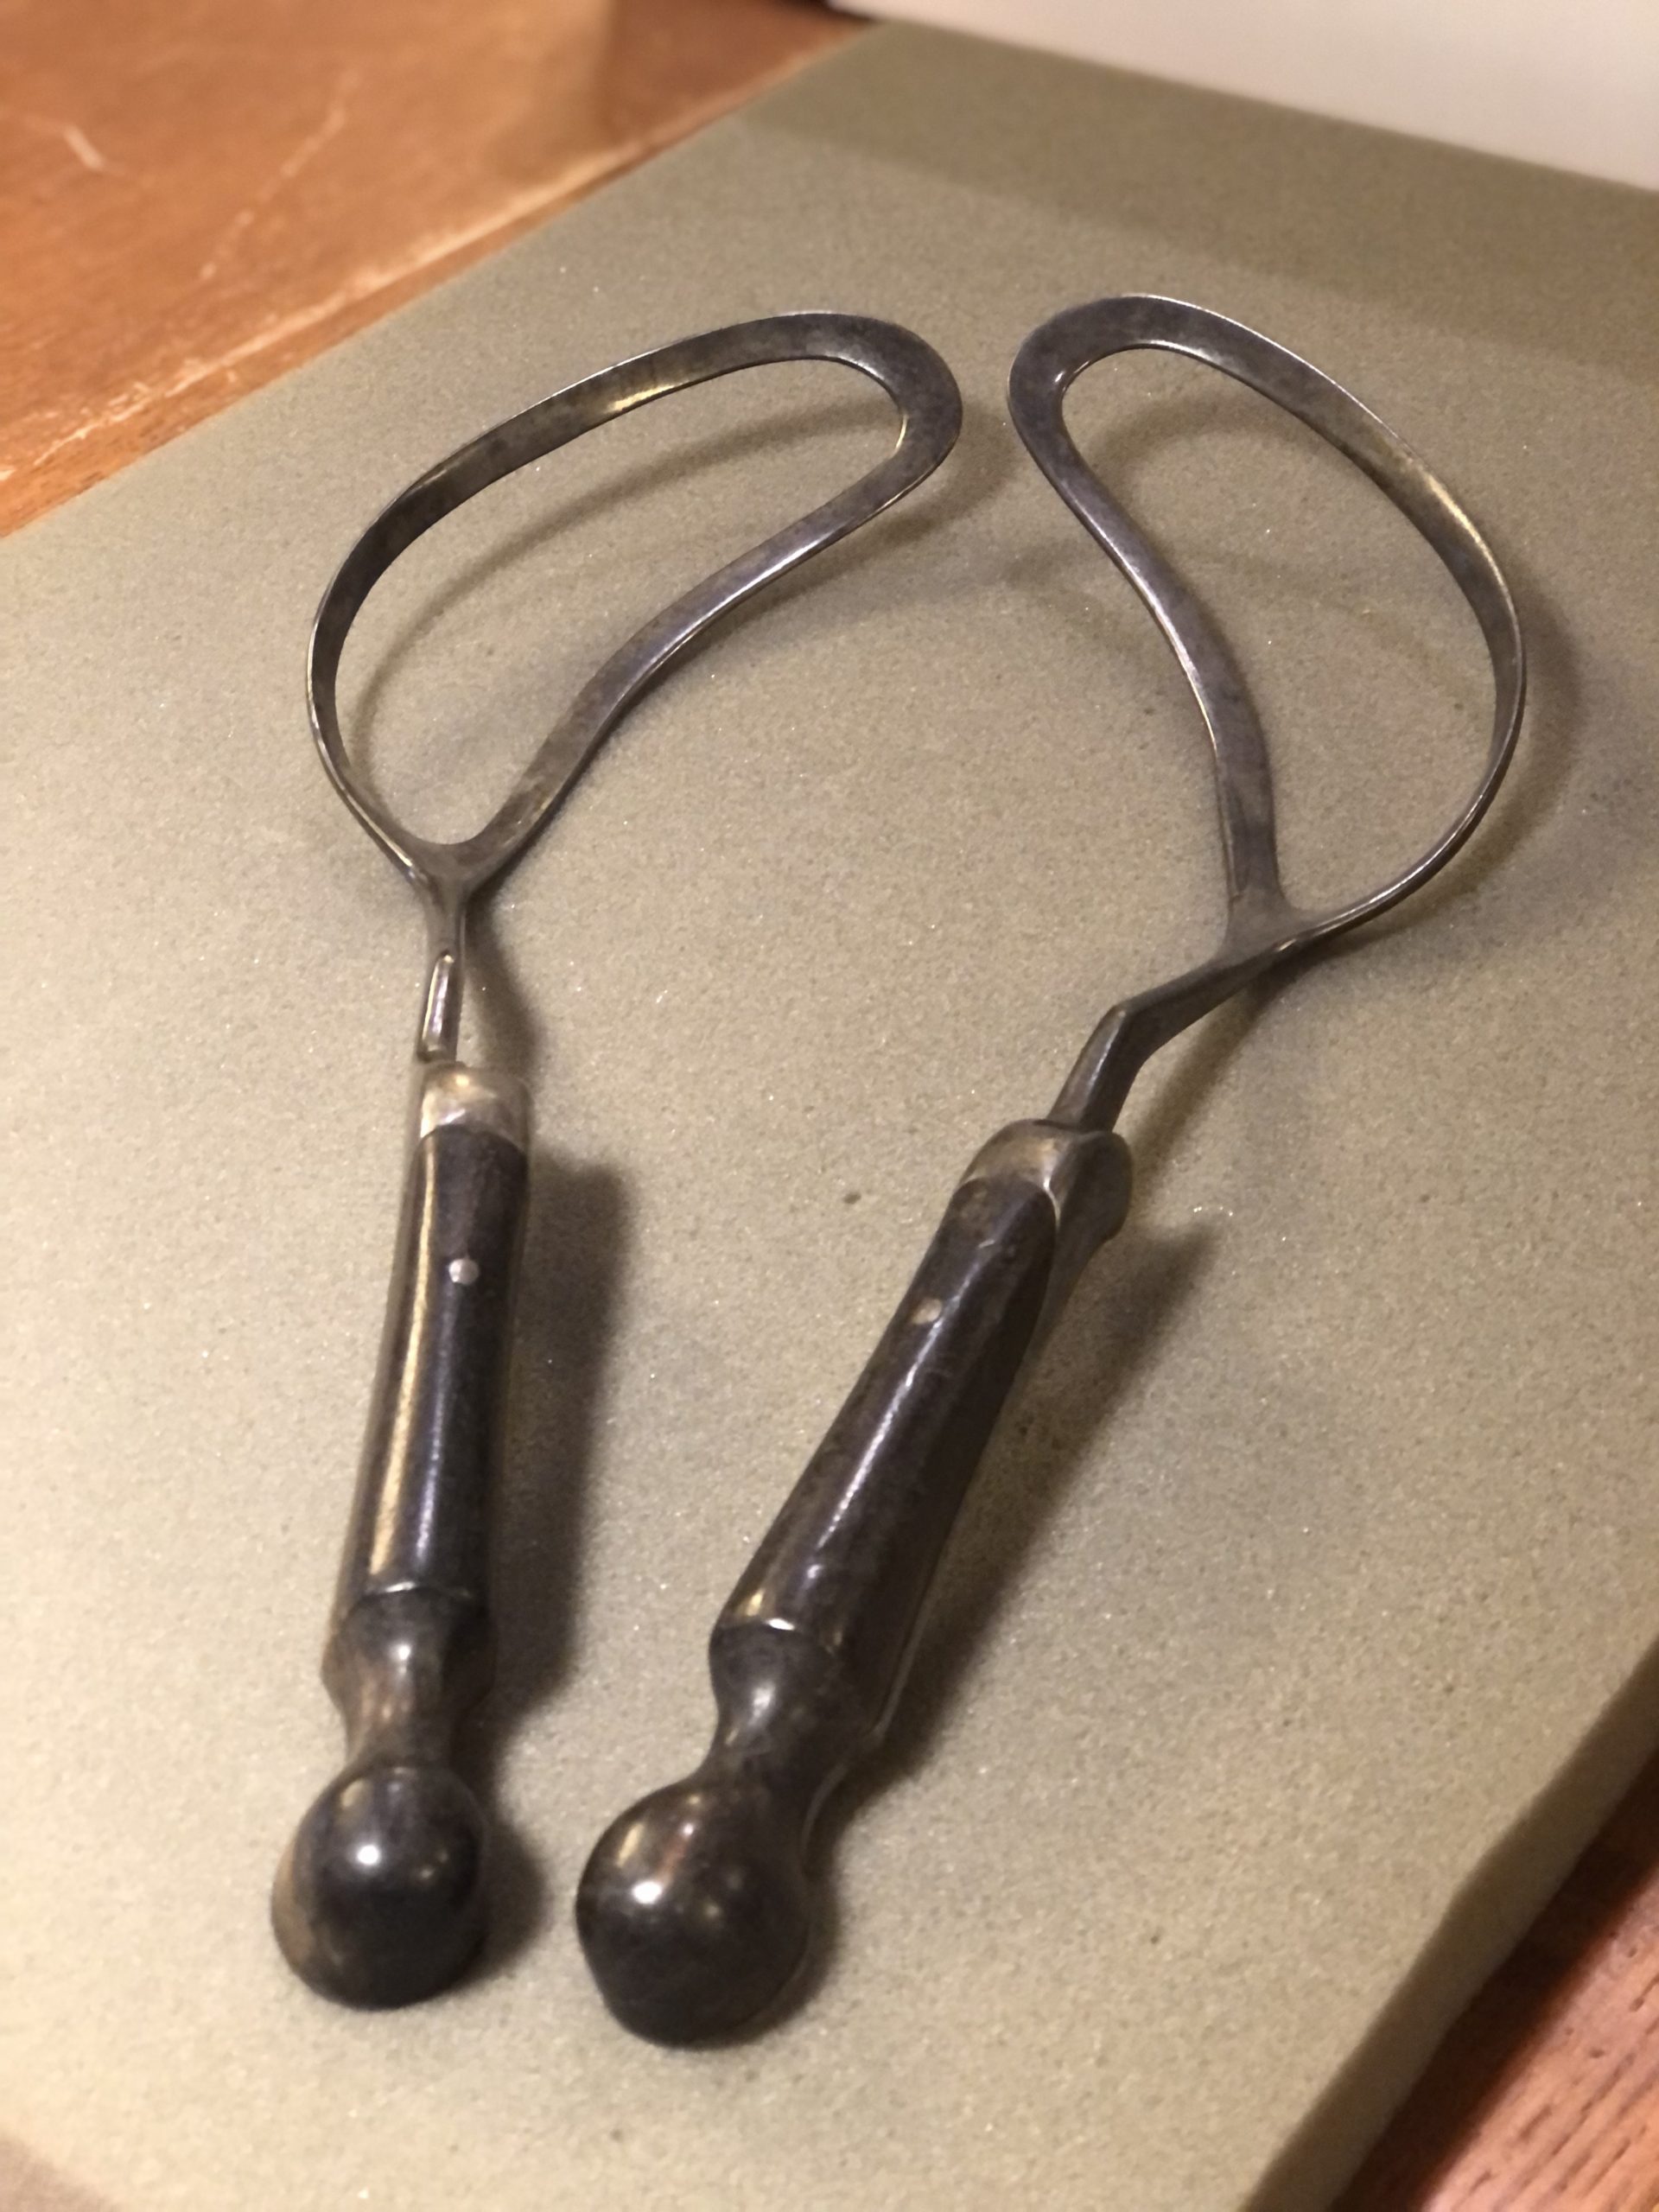 a pair of metal forceps